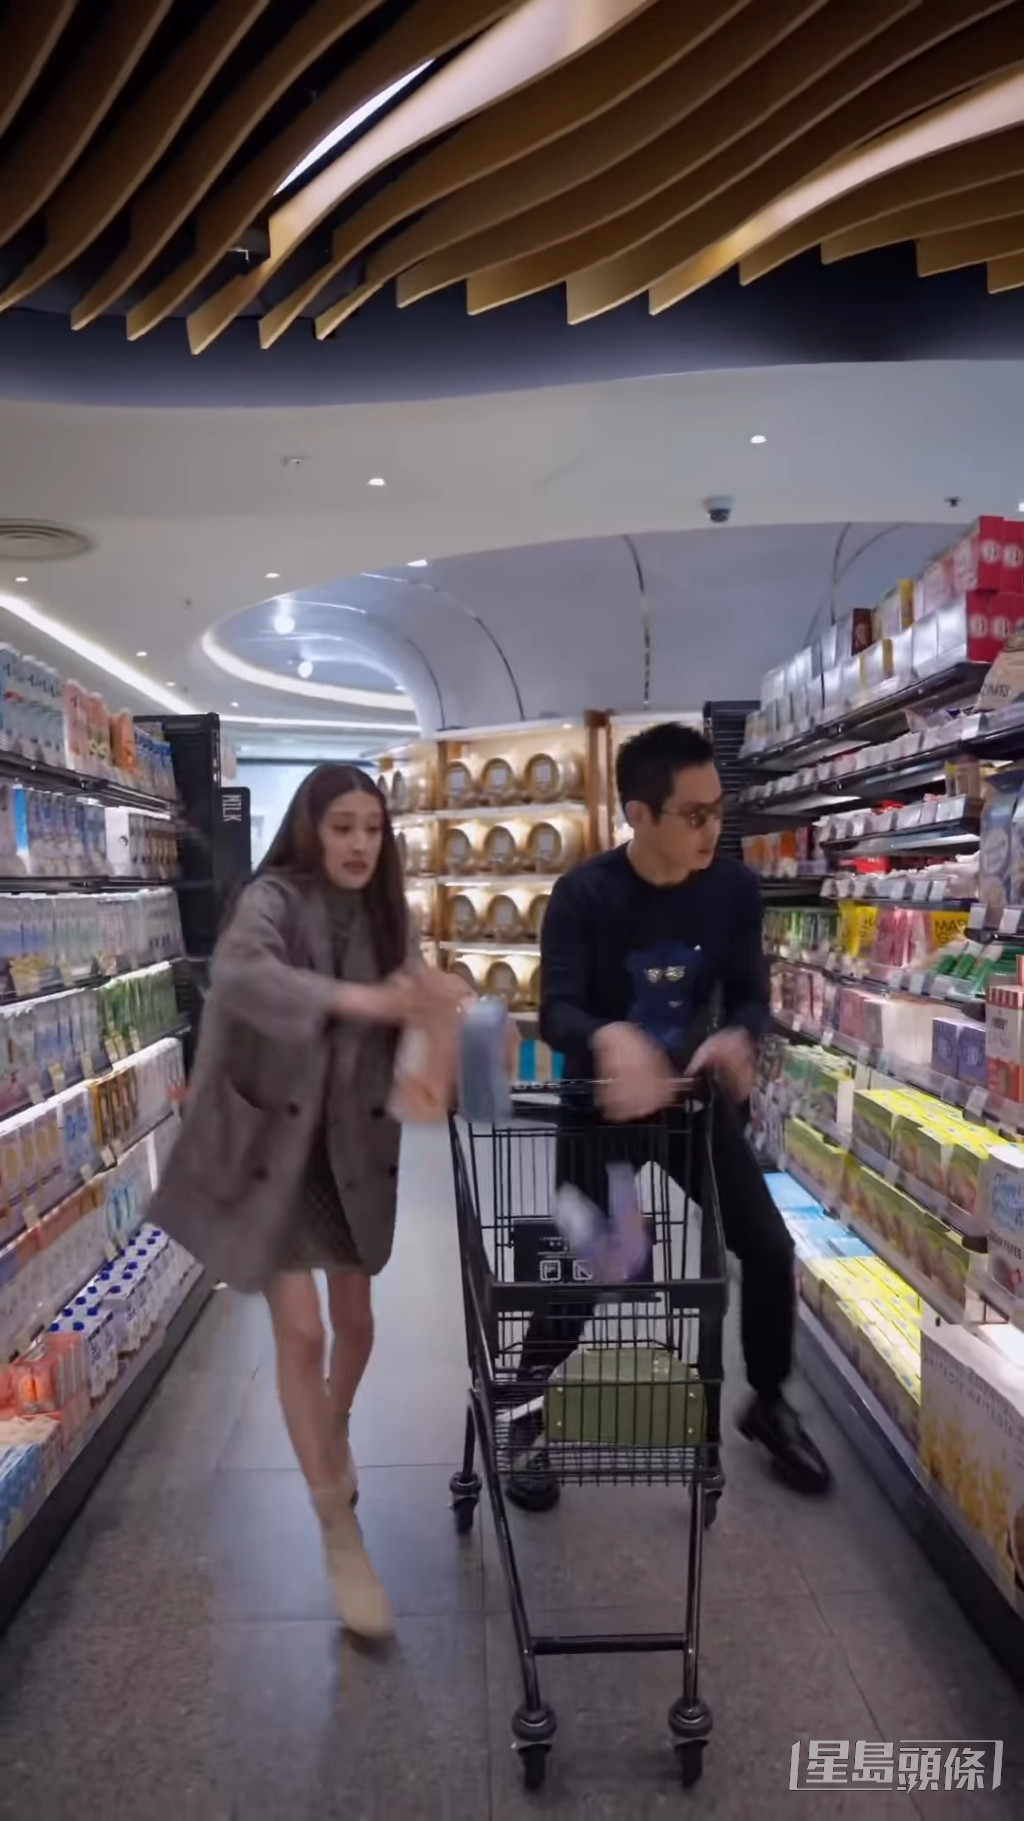 短片後段的產後生活，陳凱琳與鄭嘉穎去到超市即極速狂掃果汁、零食等食物用品給小朋友。